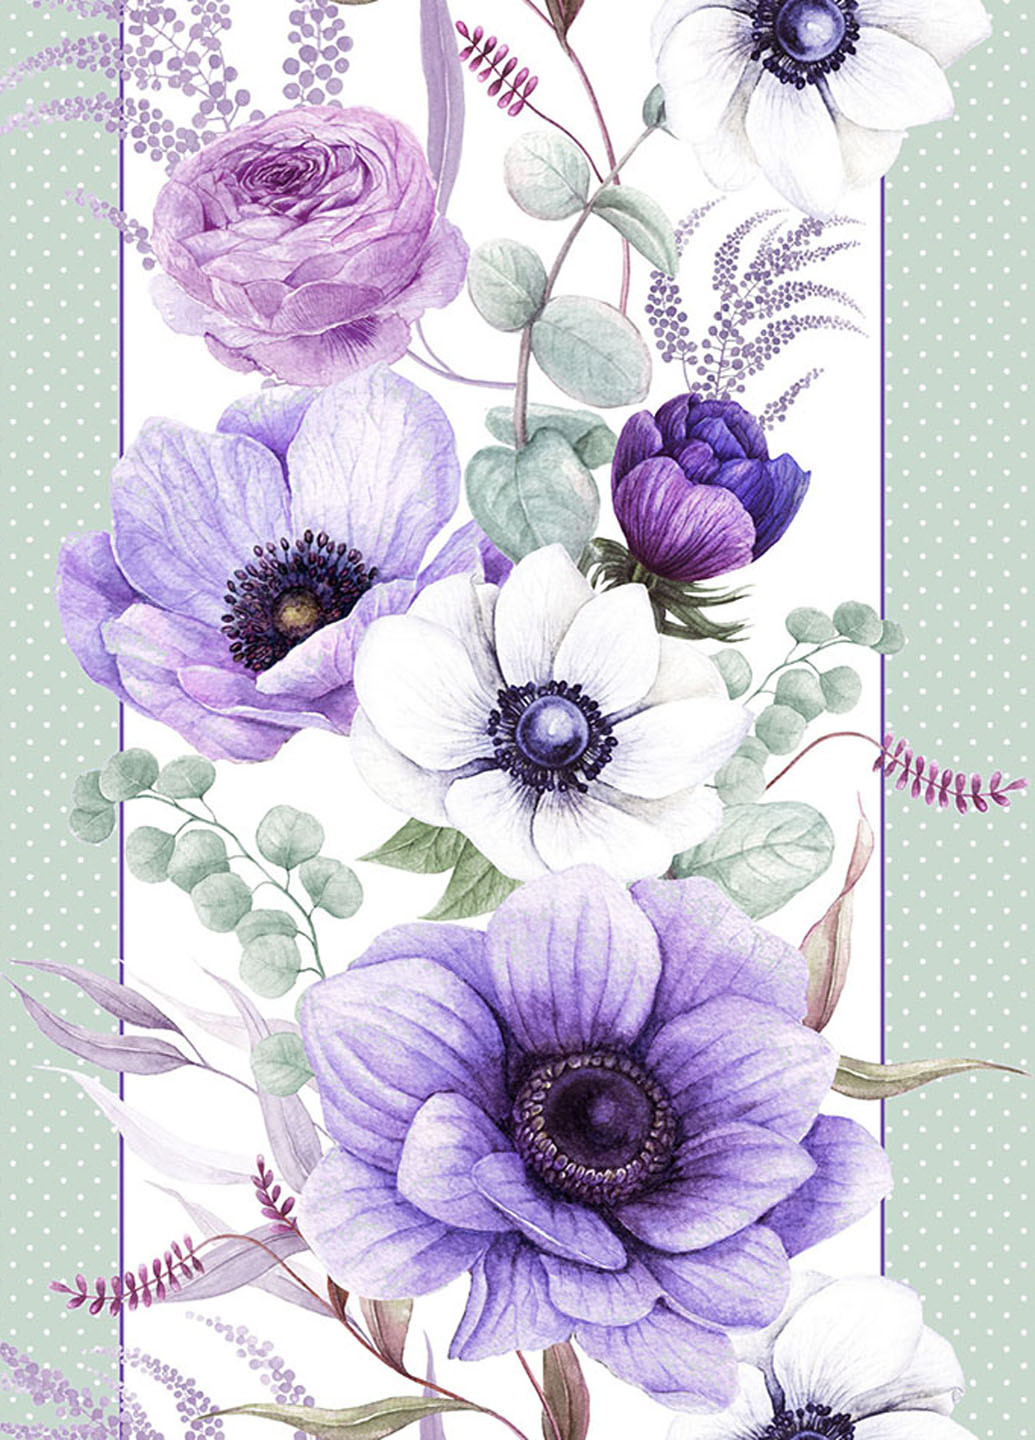 Скатерть-дорожка (раннер) "Виолет" 140х47см Homedec Раннер цветочный бирюзовый